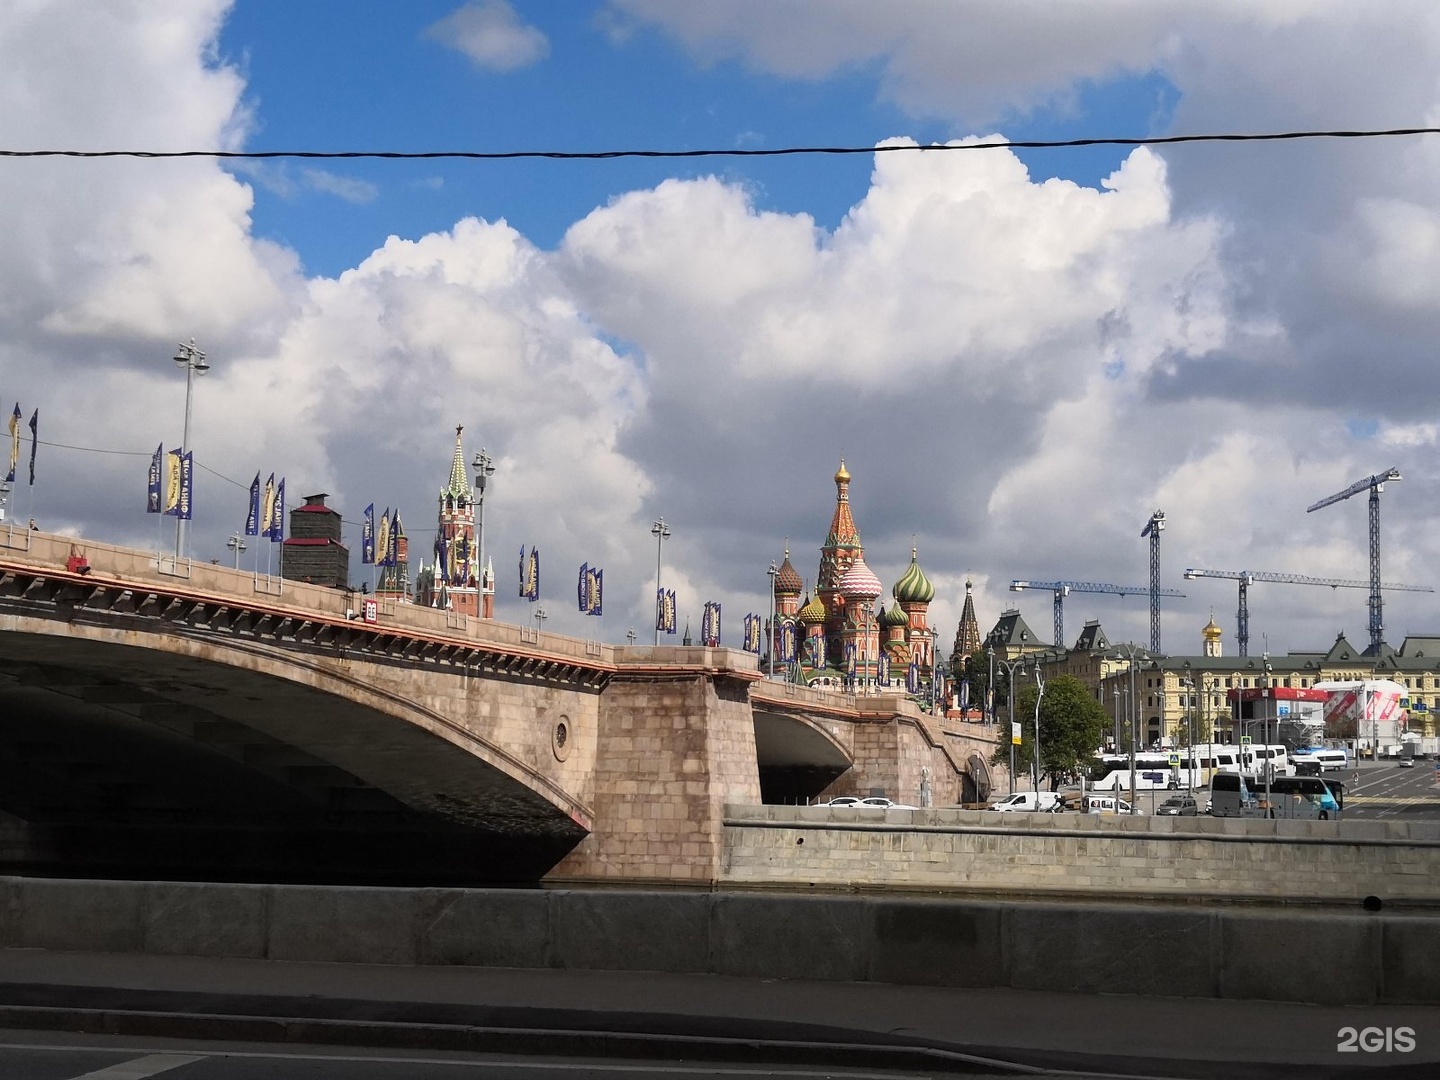 большой москворецкий мост в москве